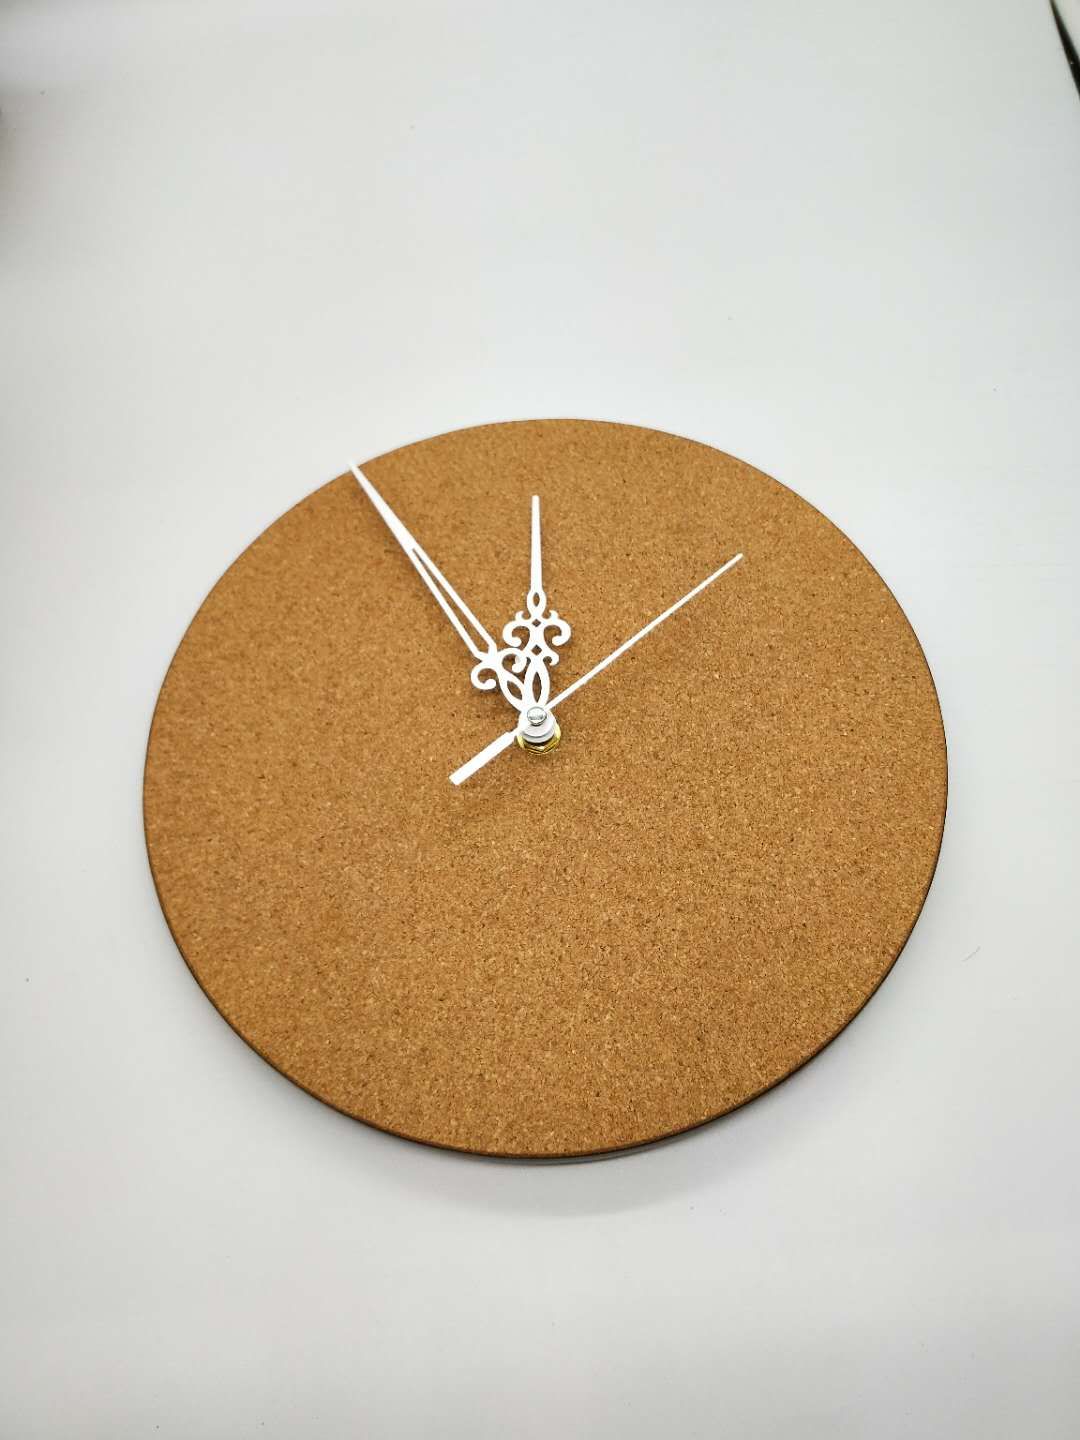 厂家可生产加工软木挂钟定制设计